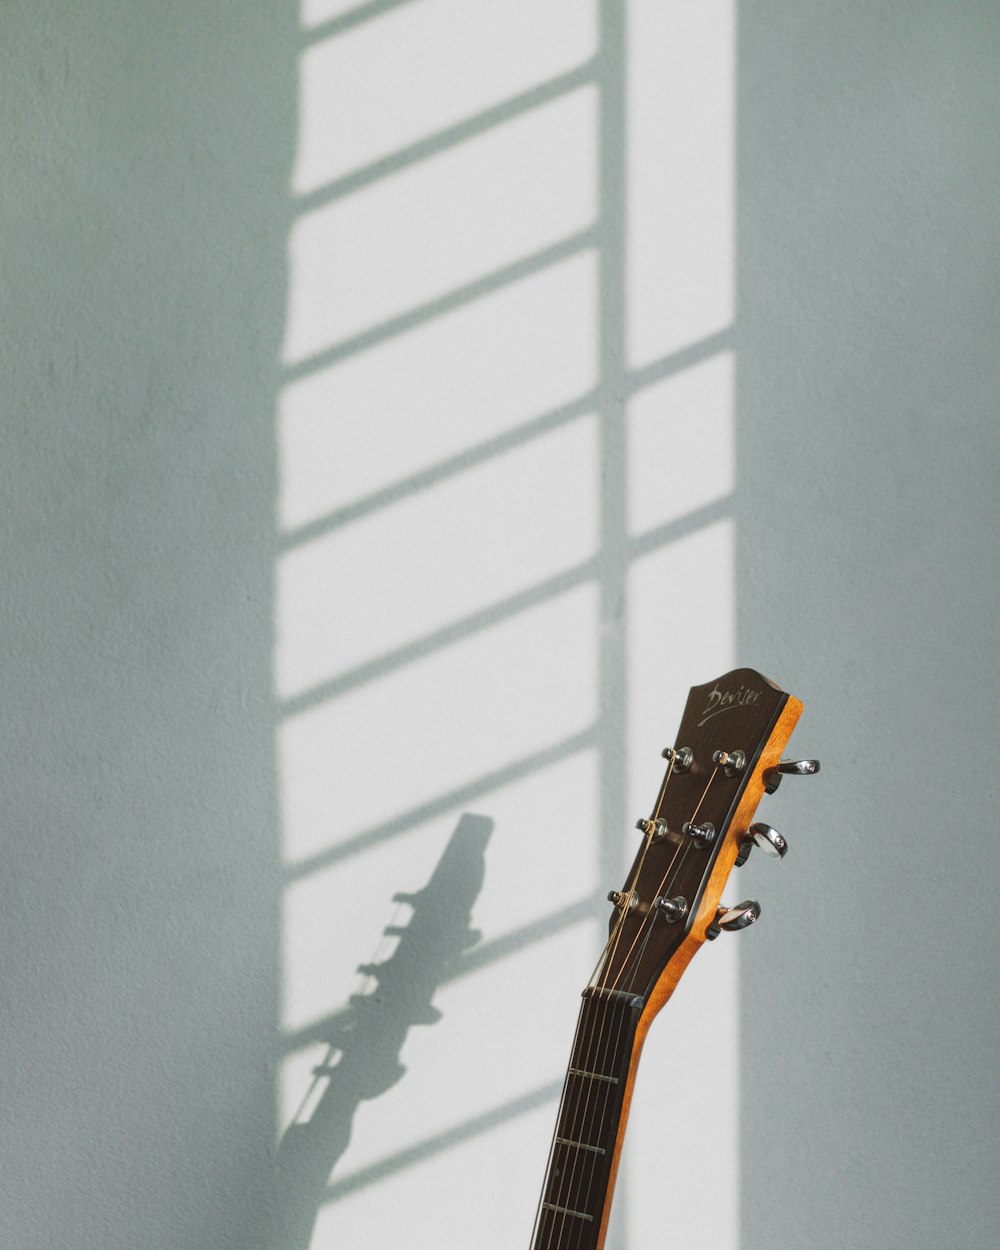 壁に茶色のアコースティックギター